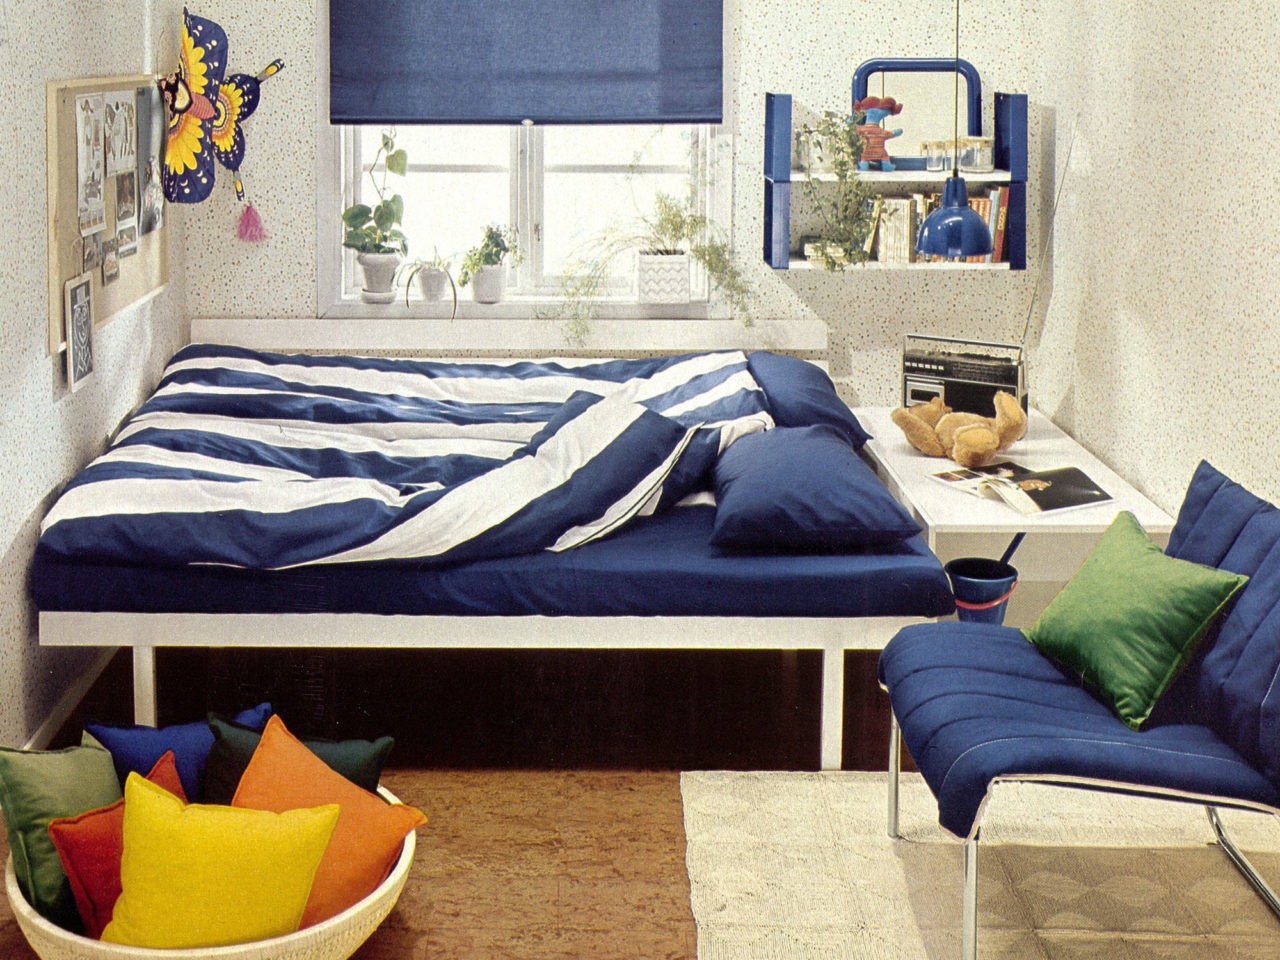 Ett ljust rum med småprickigt mönster på väggarna, korkgolv, blåvitrandiga sängkläder samt blå detaljer och textilier.